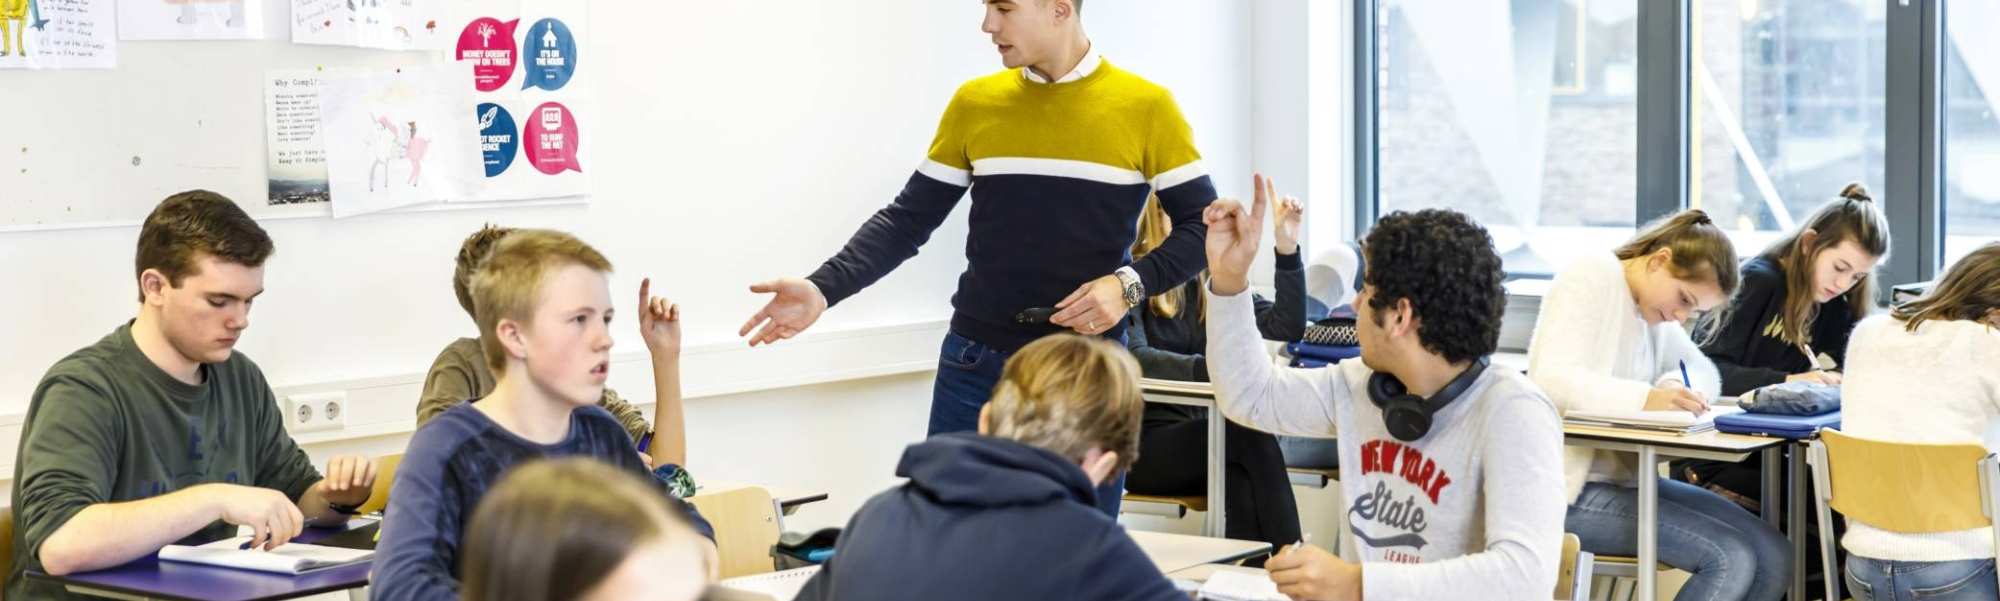 Docent op het Citadel College loopt door het klaslokaal om vragen van de leerlingen te beantwoorden die de vinger in de lucht hebben.